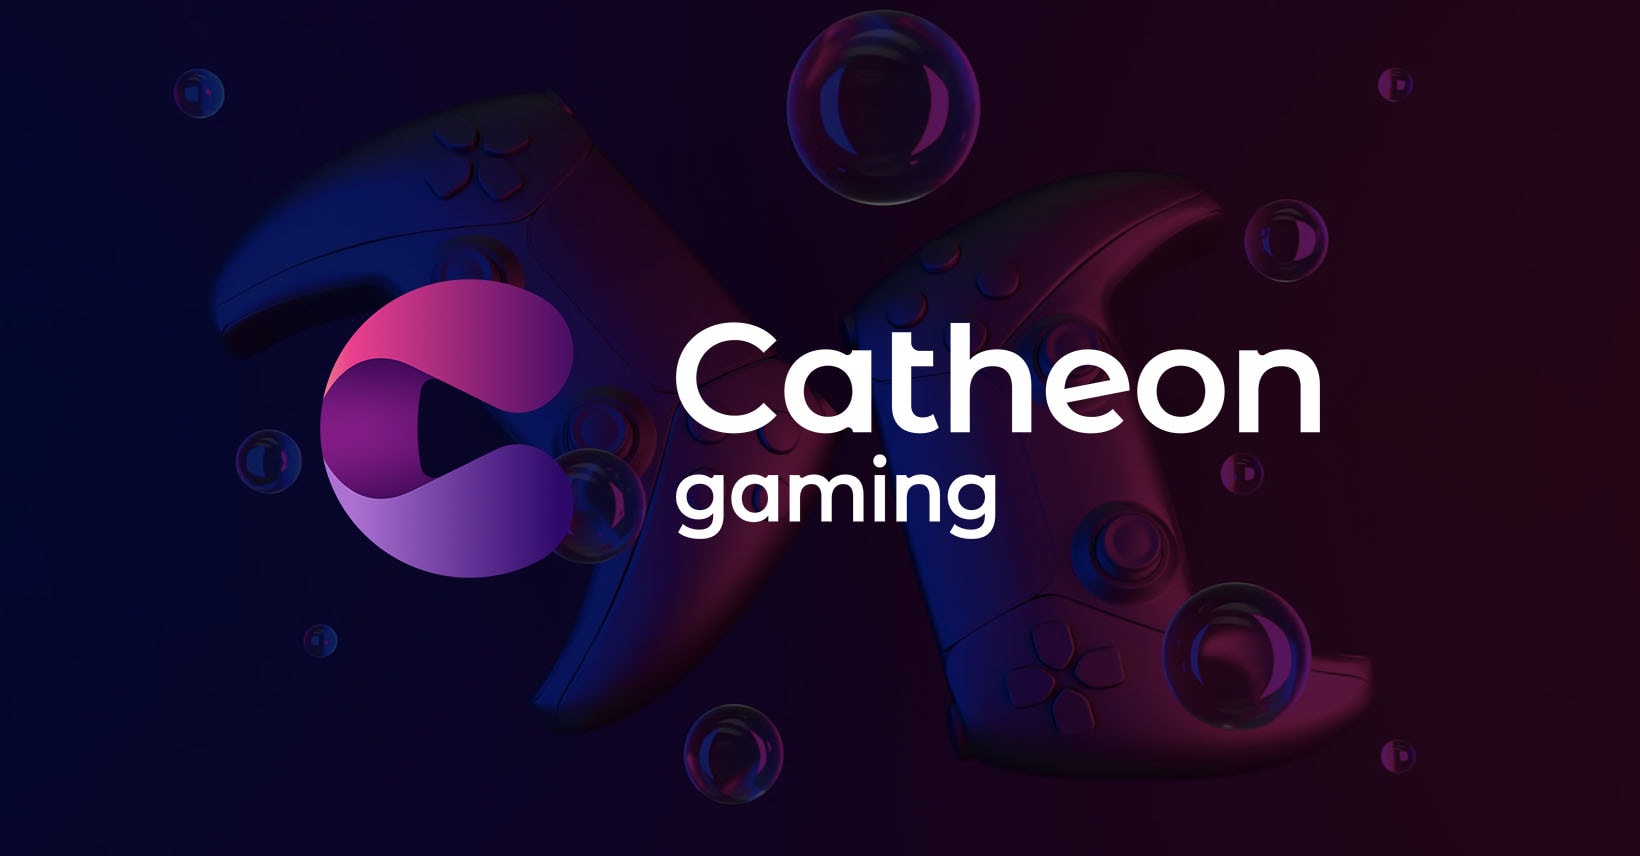 Catheon Gaming har 25 Blockchain-spil, 50 millioner downloads og enorme planer